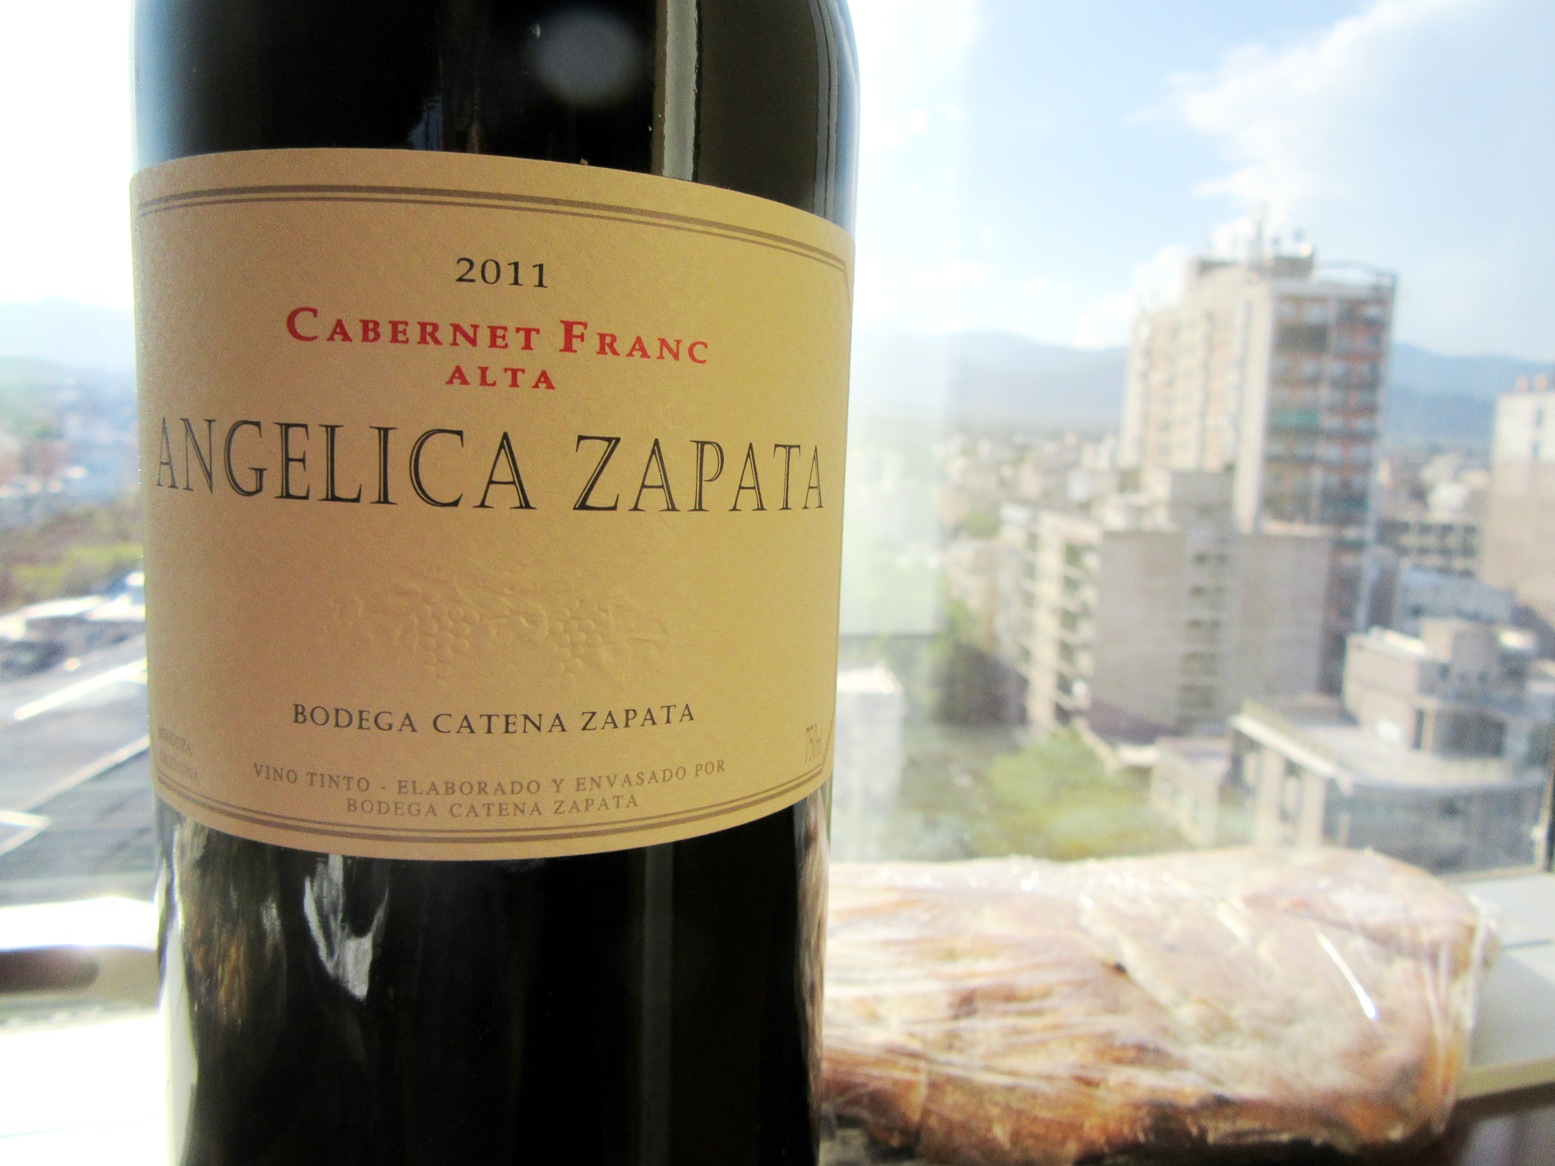 Bodega Catena Zapata, Angelica Zapata, Cabernet Franc Alta 2011, Mendoza, Argentina, Wine Casual